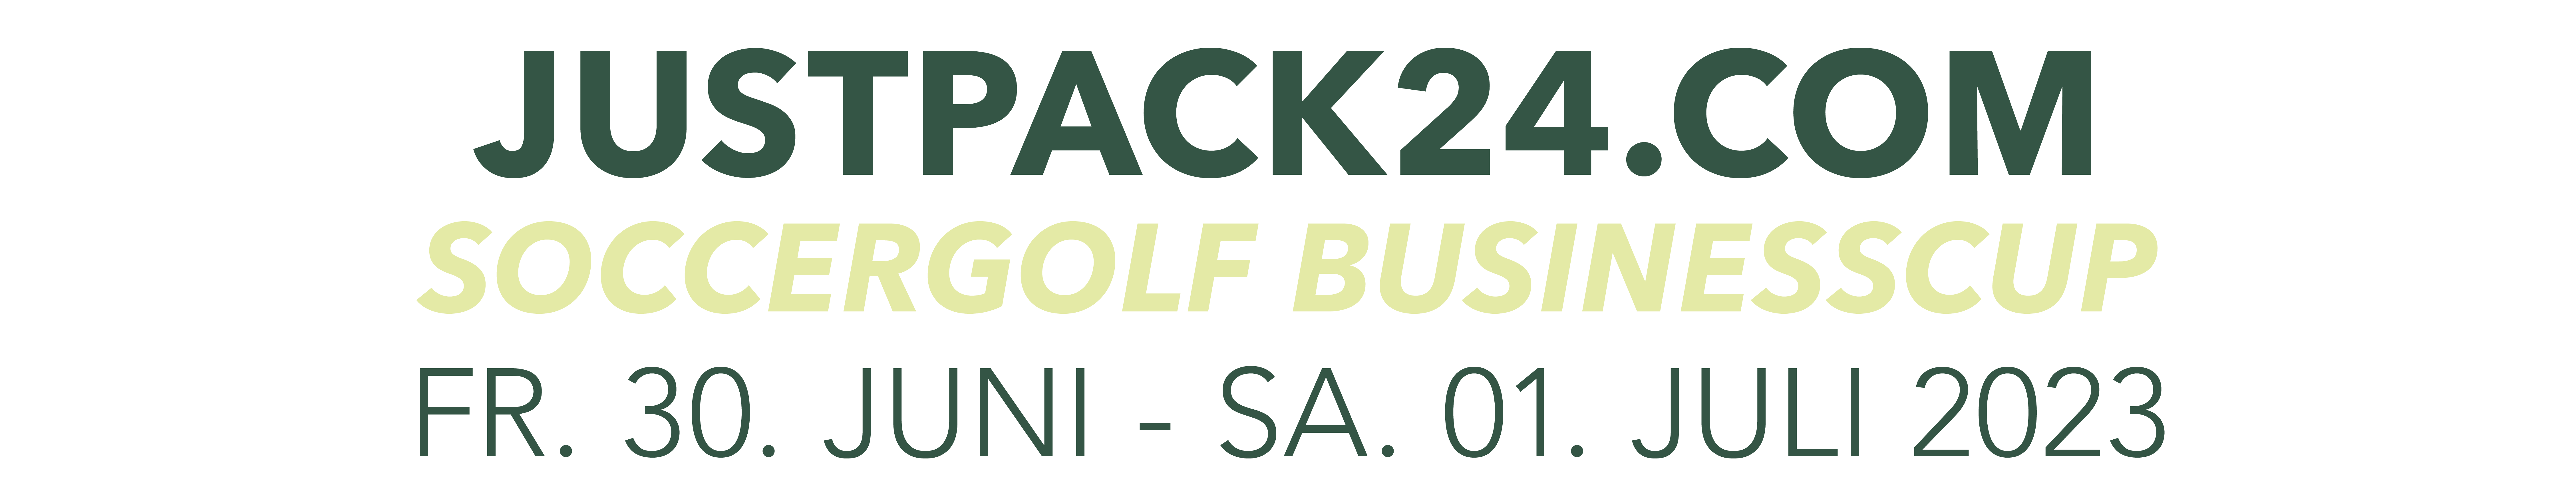 Justpack24.com Soccergolf Businesscup, Freitag 30. Juni bis Samstag 01. Juli 2023